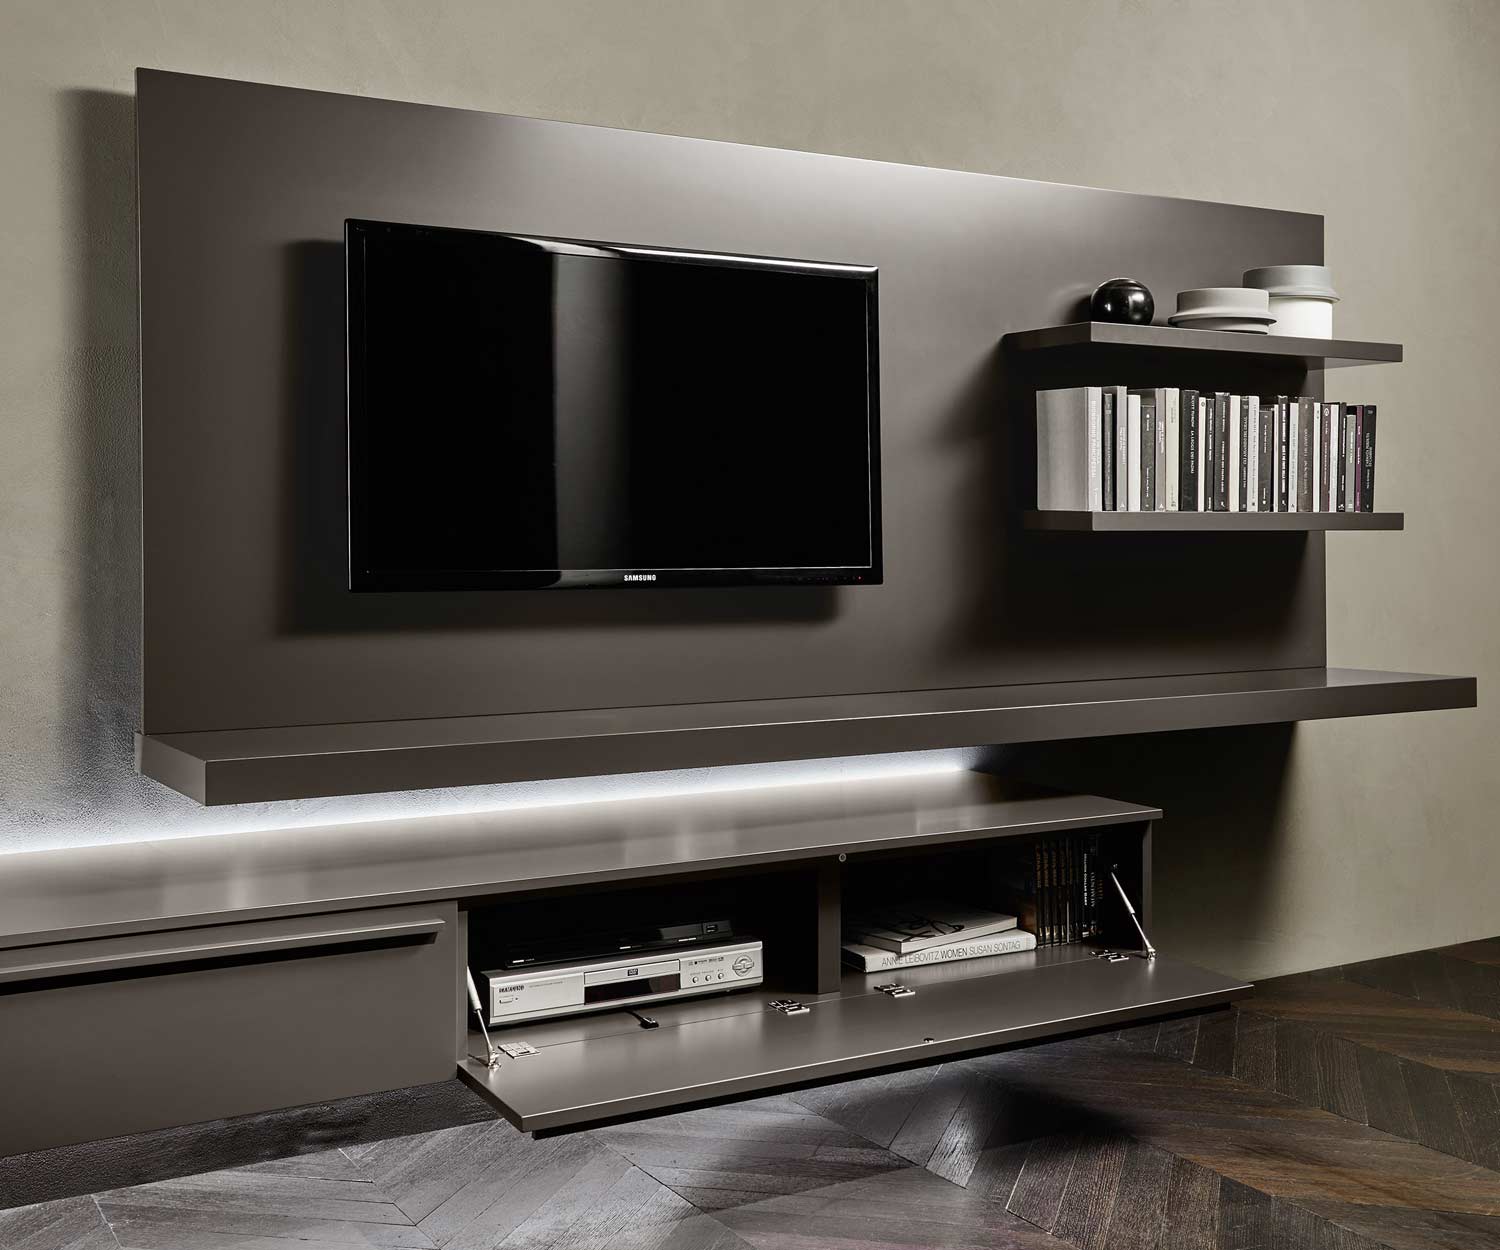 Exclusieve Livitalia TV design wandplank hangende plank boekenkast in licht eiken